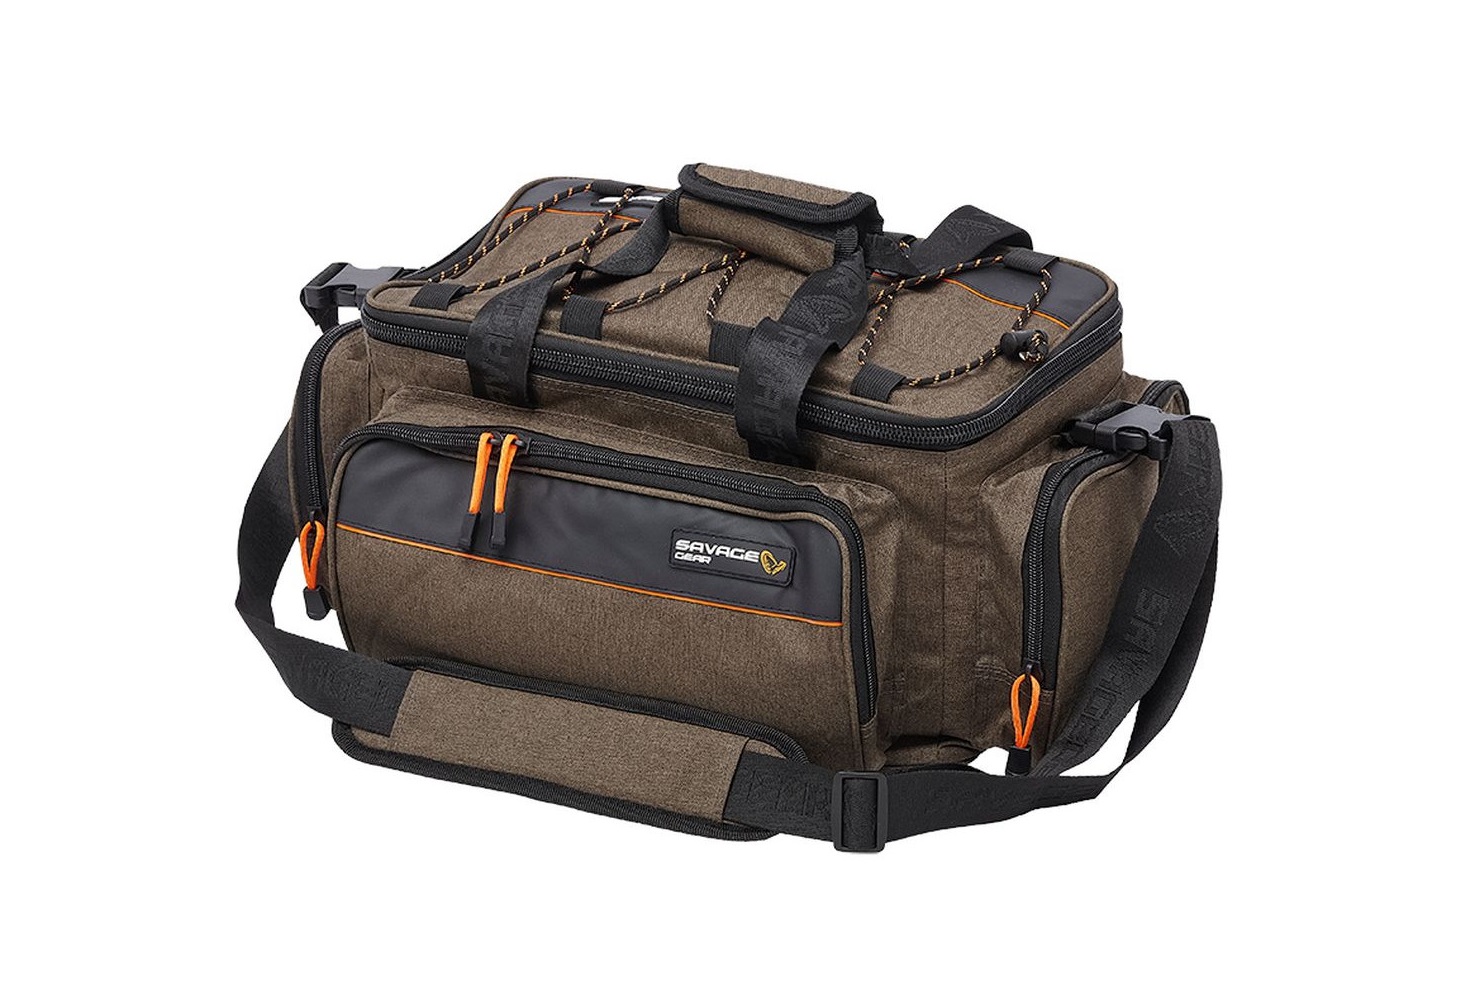 Taška System Carryall Medium / Tašky a obaly / prívlačové tašky